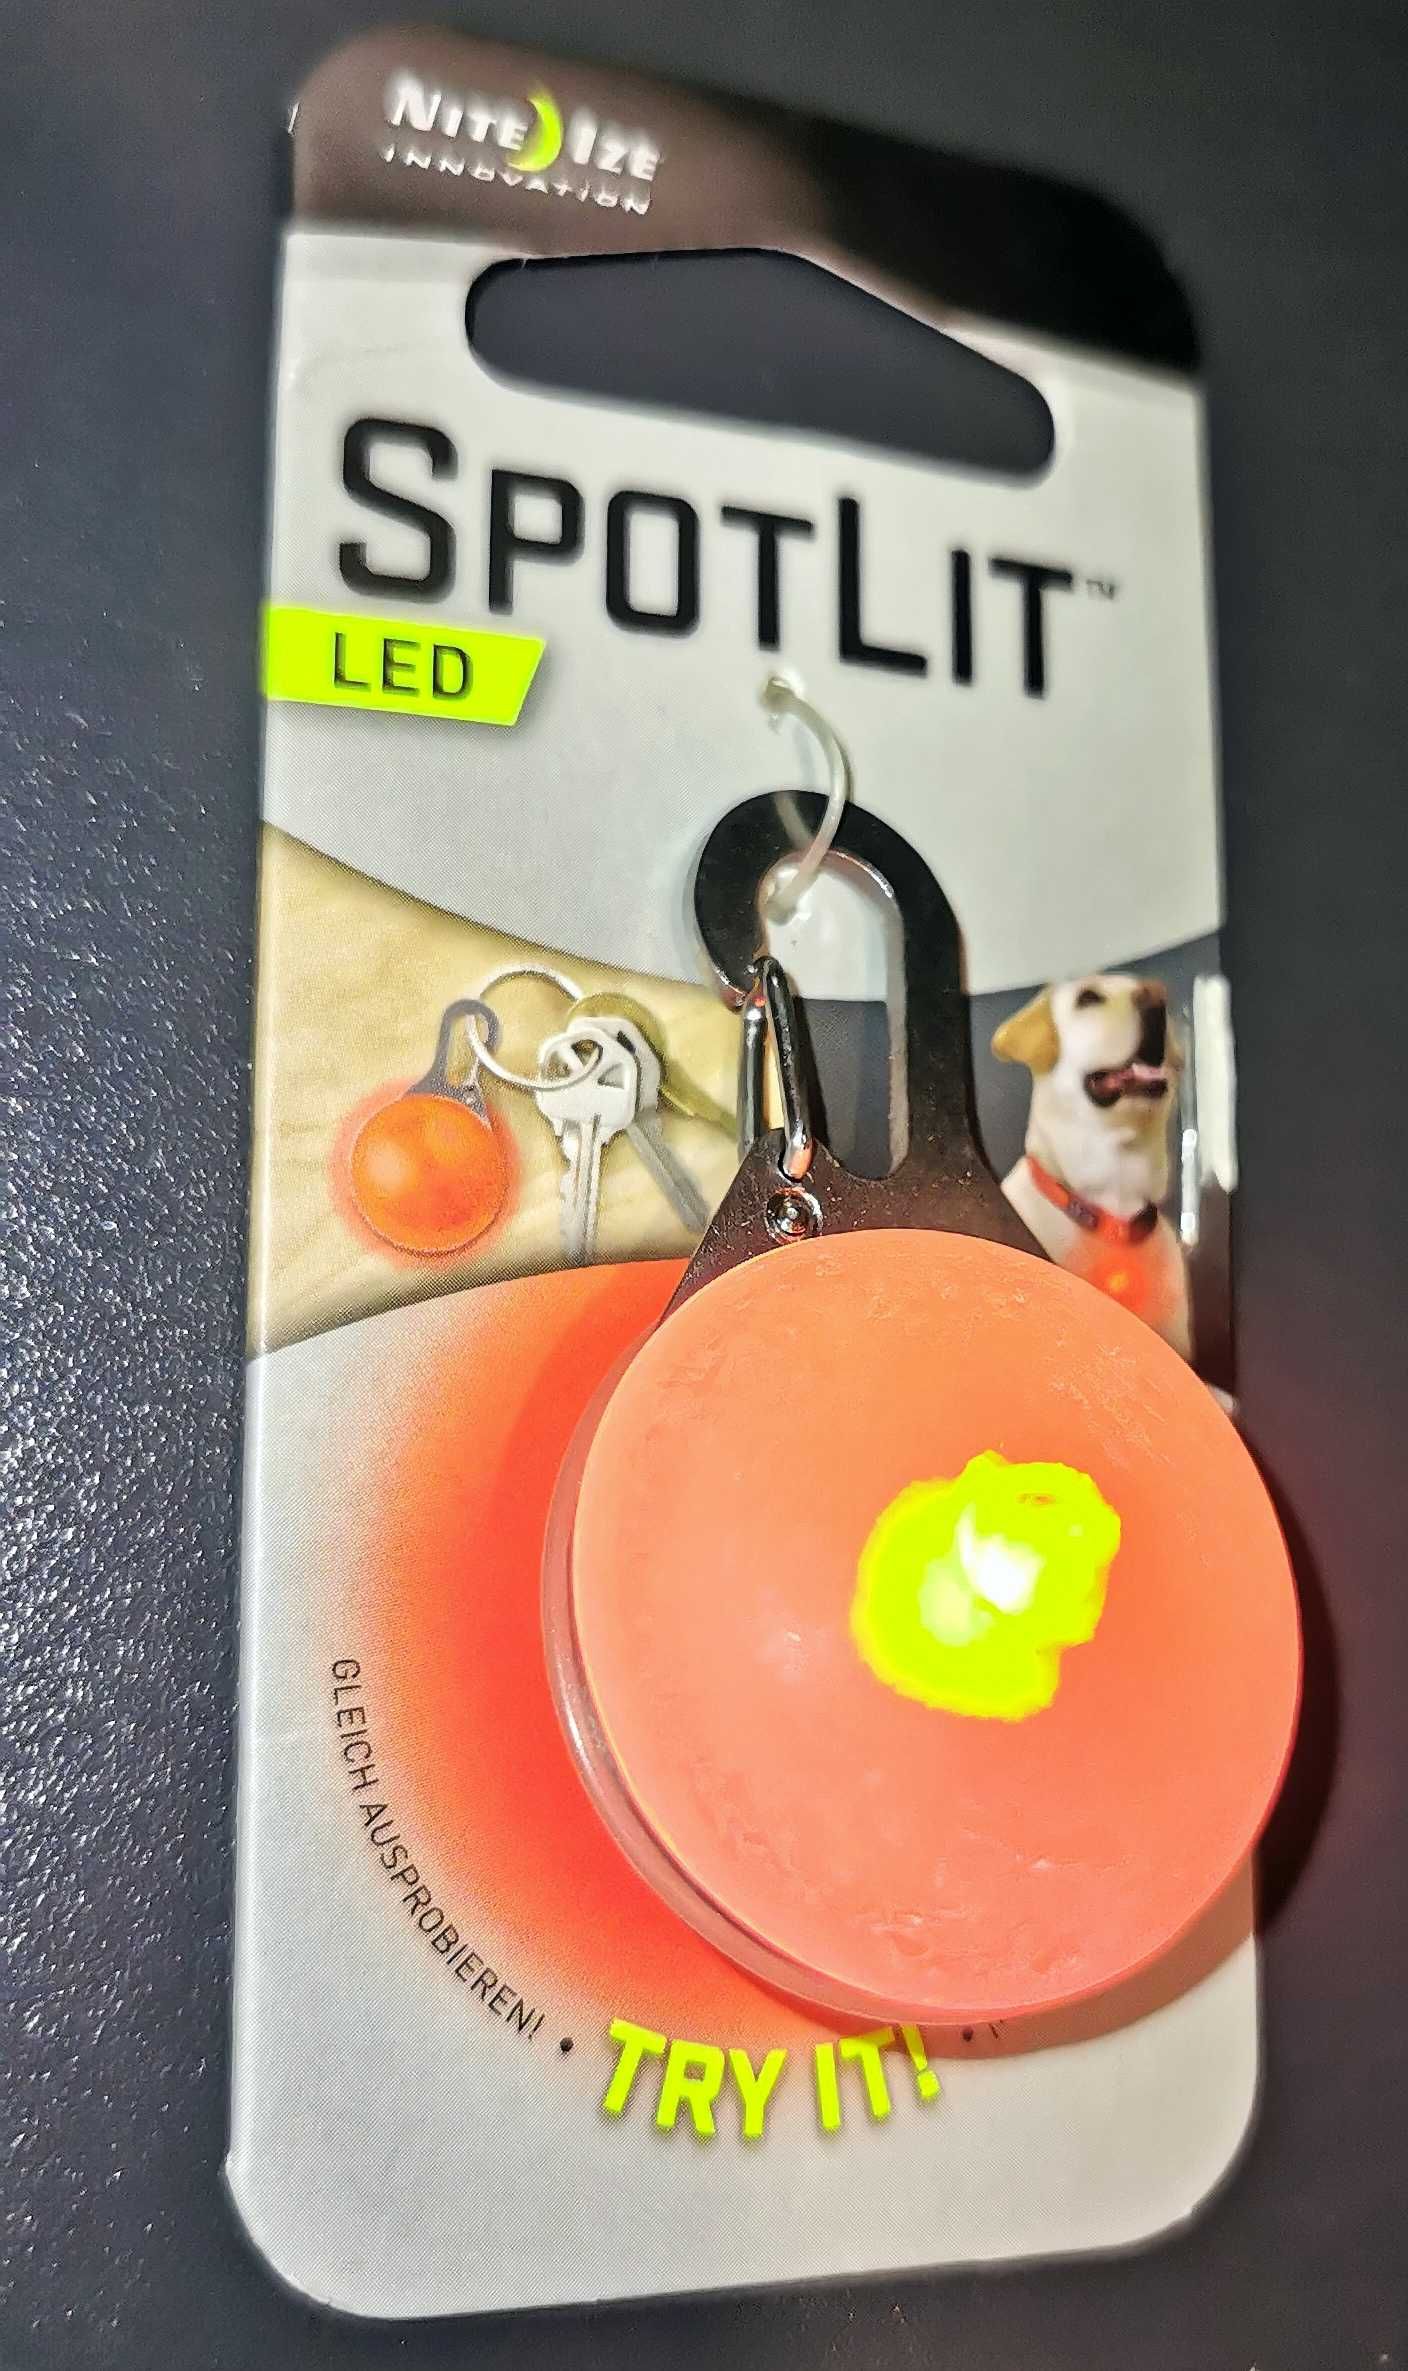 Nite Ize SpotLit LED latarka zawieszka świecąca z karabinkiem dla psa